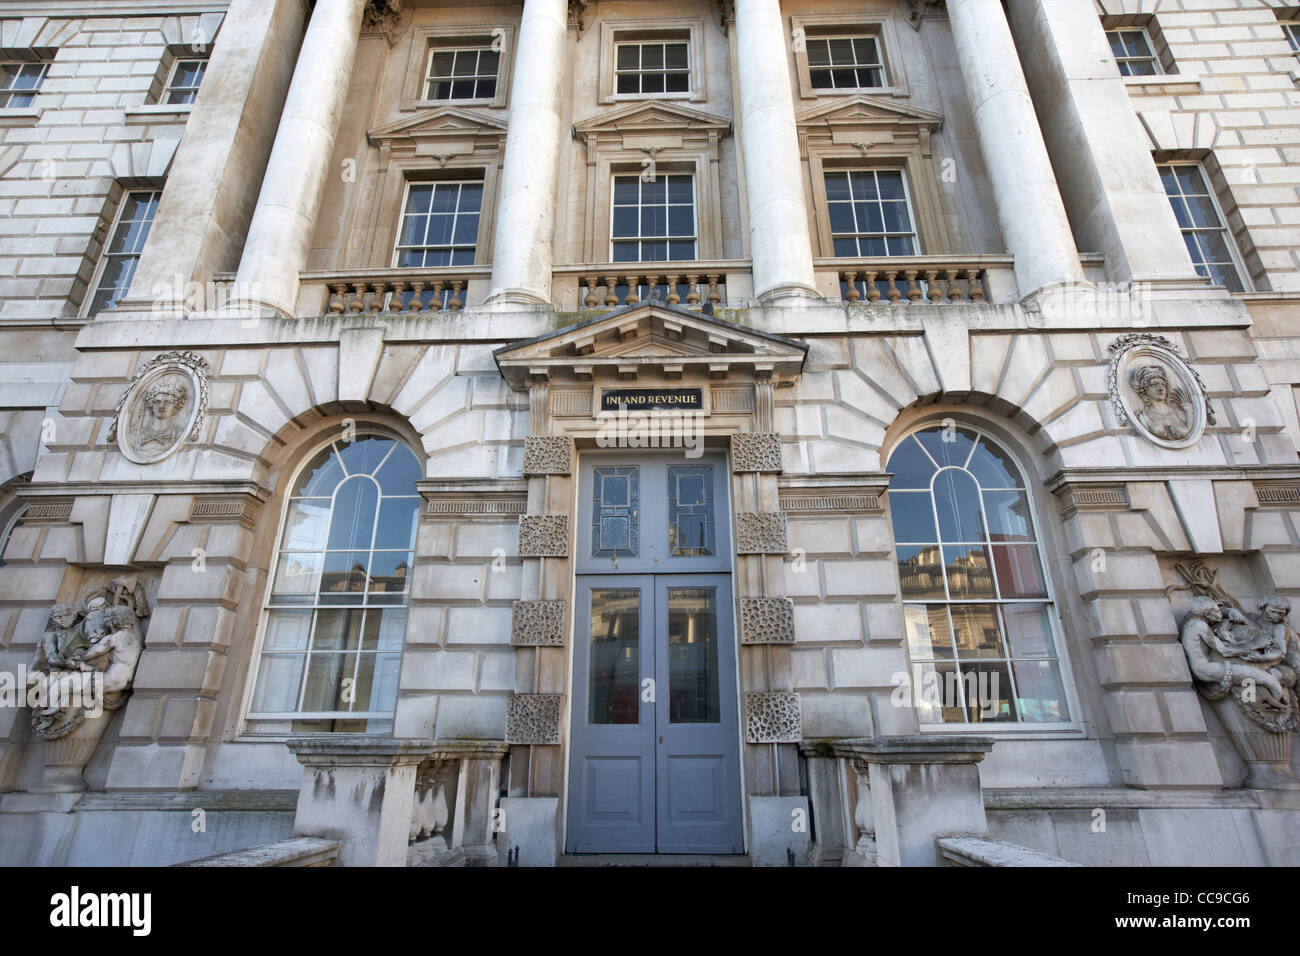 L Inland revenue porta all'interno di Somerset House Londra Inghilterra Regno Unito Regno Unito Foto Stock